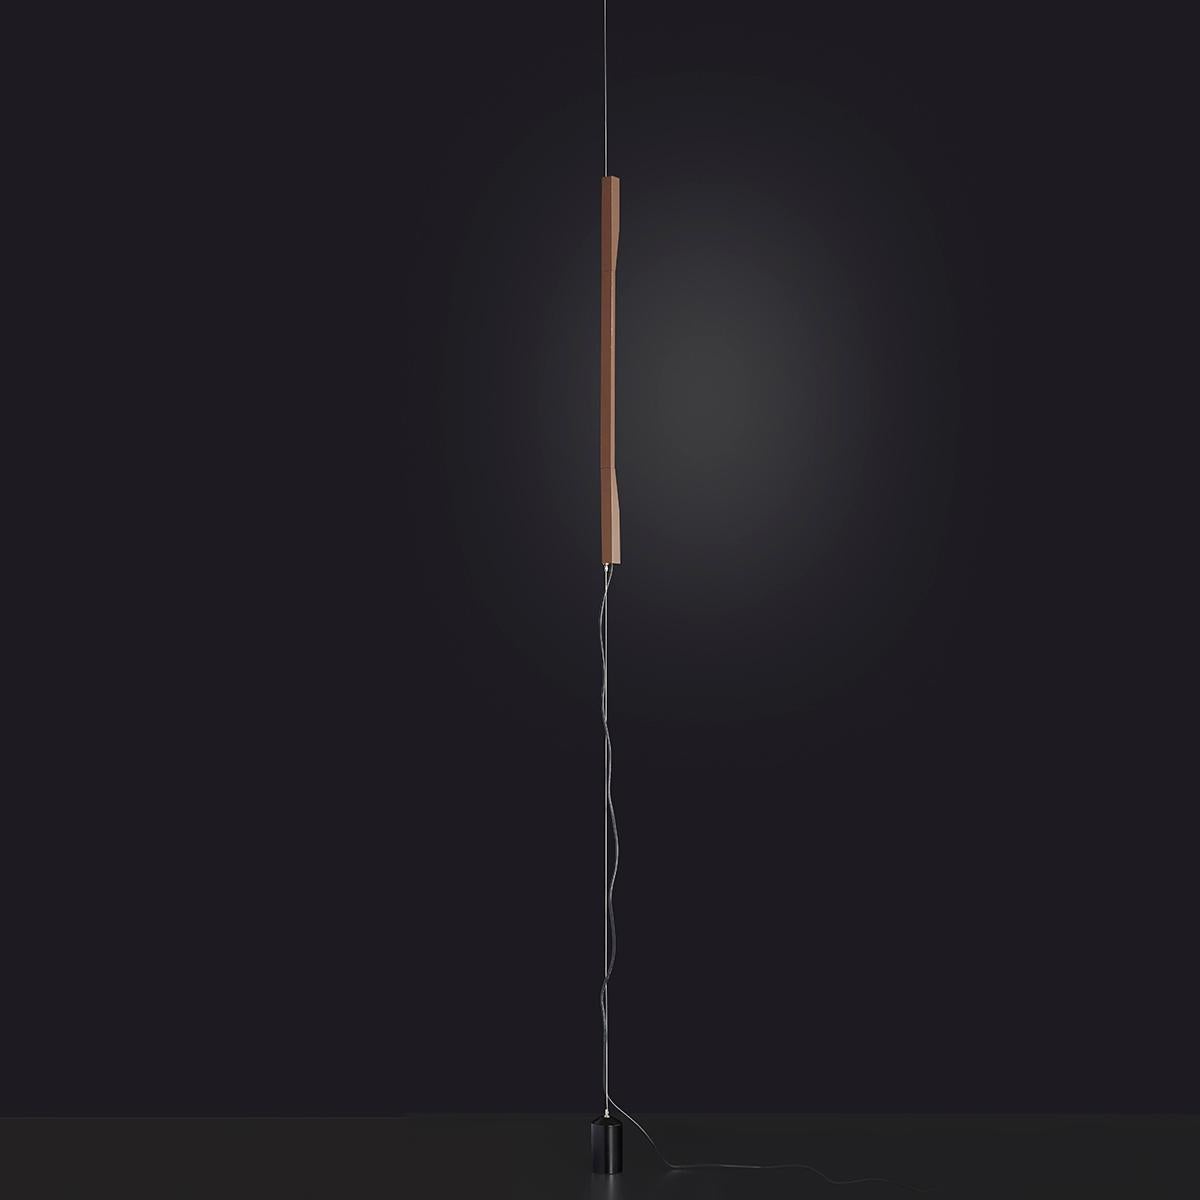 Suspension 'Ilo' conçue par David Lopez Quincoce en 2019.
Lampe LED orientable donnant une lumière indirecte. Glissement vertical de la tige en aluminium anodisé bronze satiné sur un câble en acier allant du plafond au sol. Contrepoids peint en